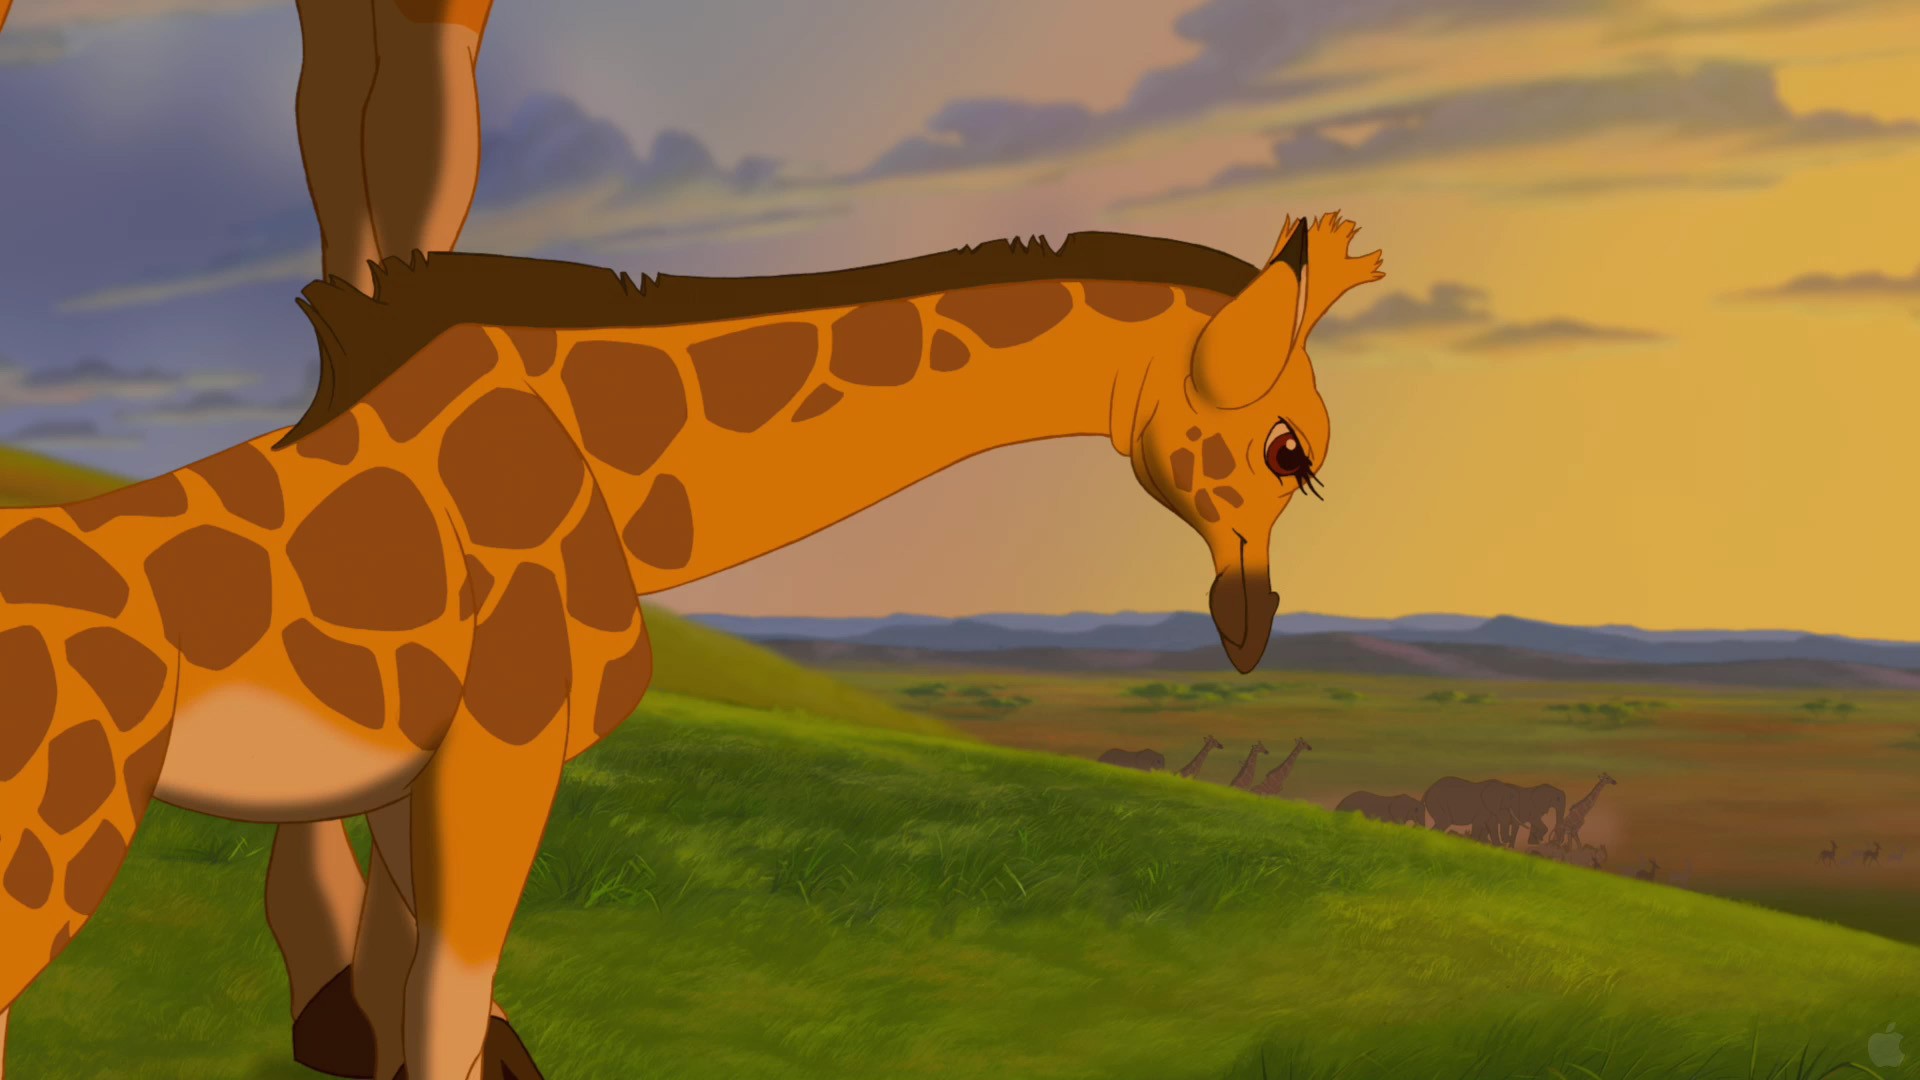 cartoons, Disney Company, The Lion King, 3D, giraffes - desktop wallpaper